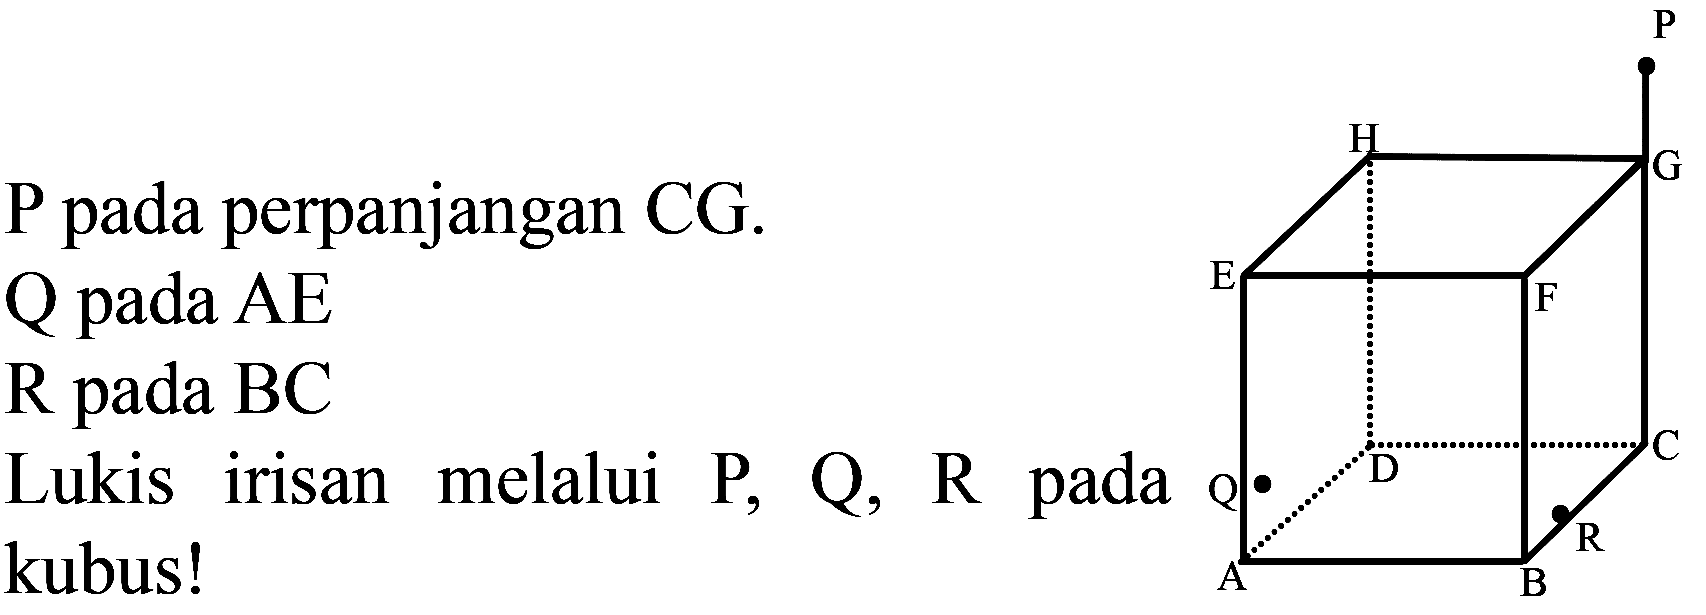  P  pada perpanjangan  C G .
 Q  pada  A E 
 R  pada  BC 
Lukis irisan melalui  P, Q, R  pada kubus!